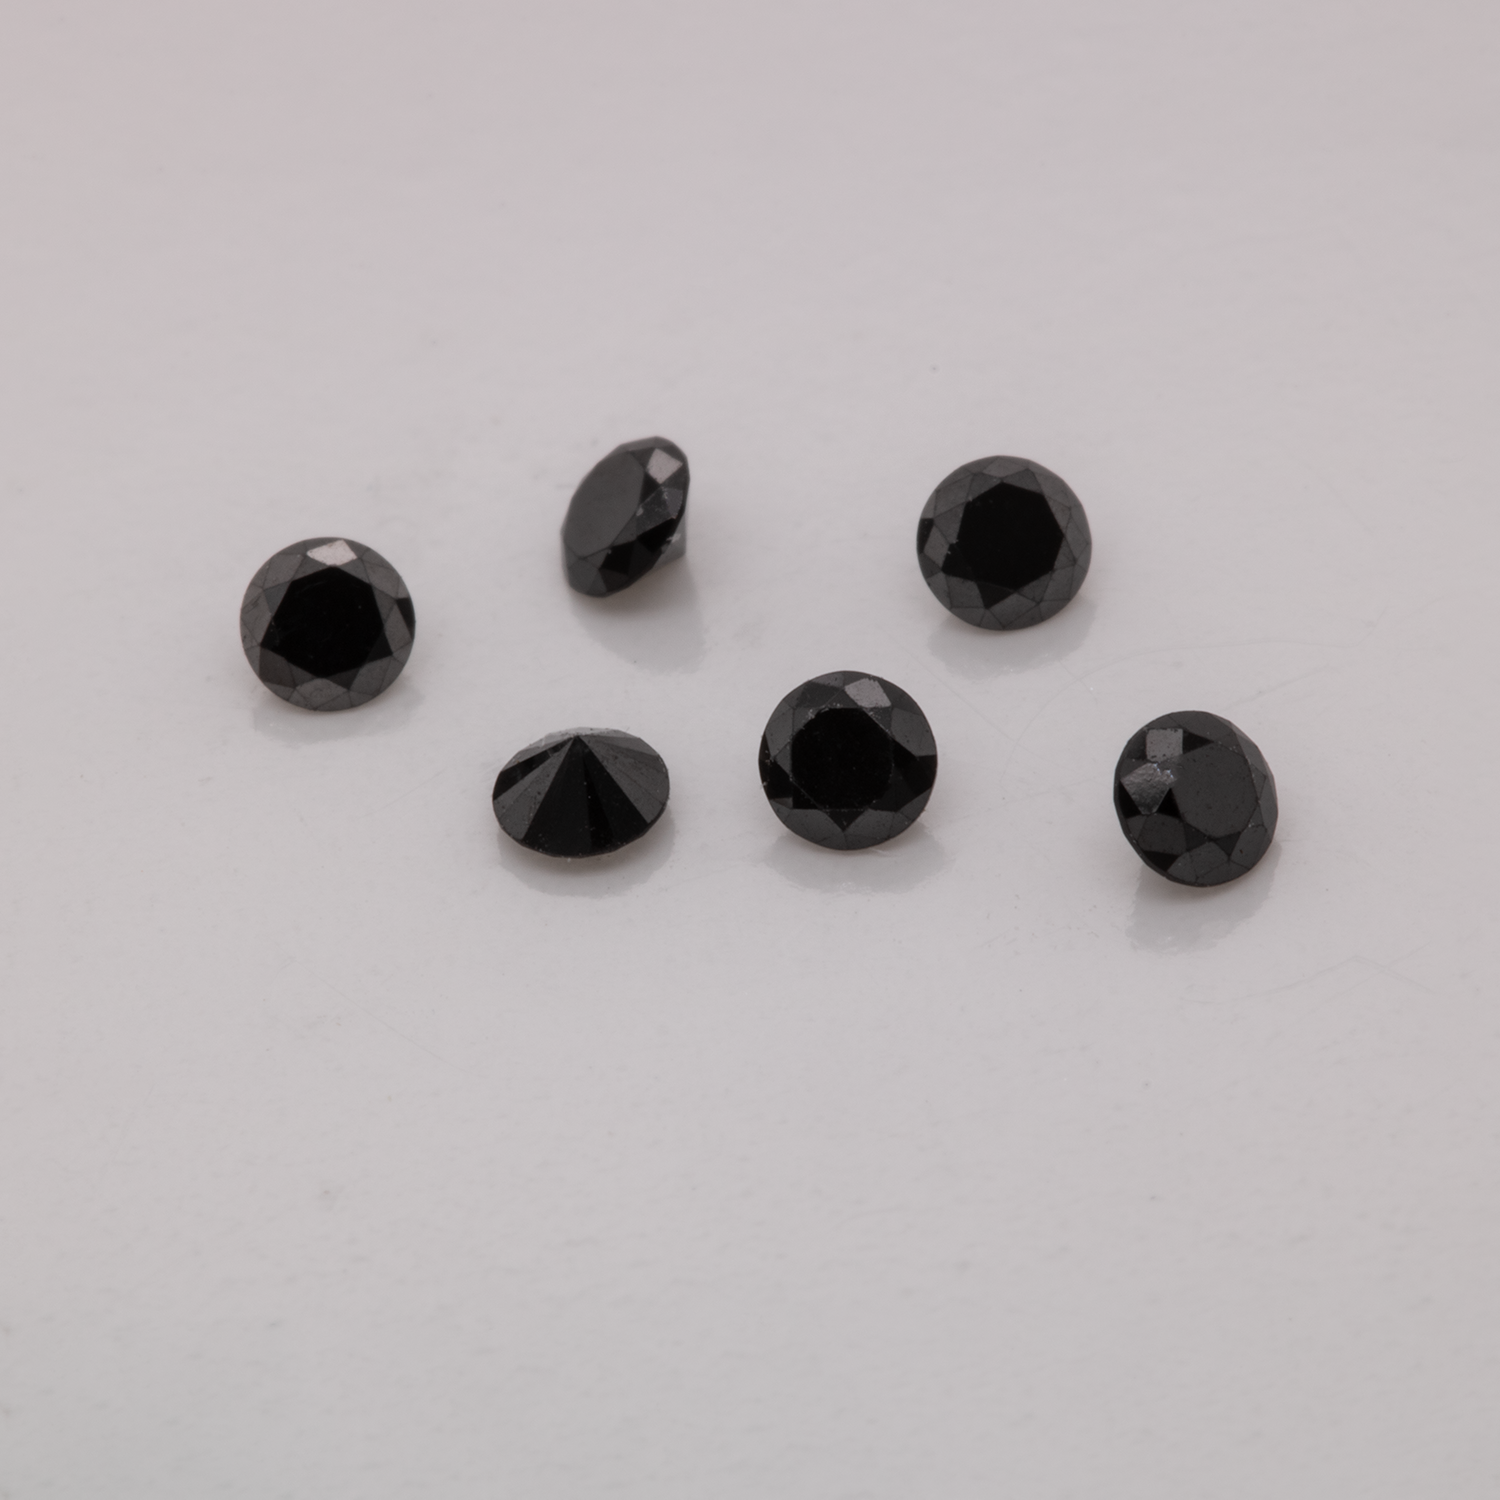 Diamant - schwarz, nicht transparent, rund, 2,0mm, ca. 0,03 cts, Nr. D11060